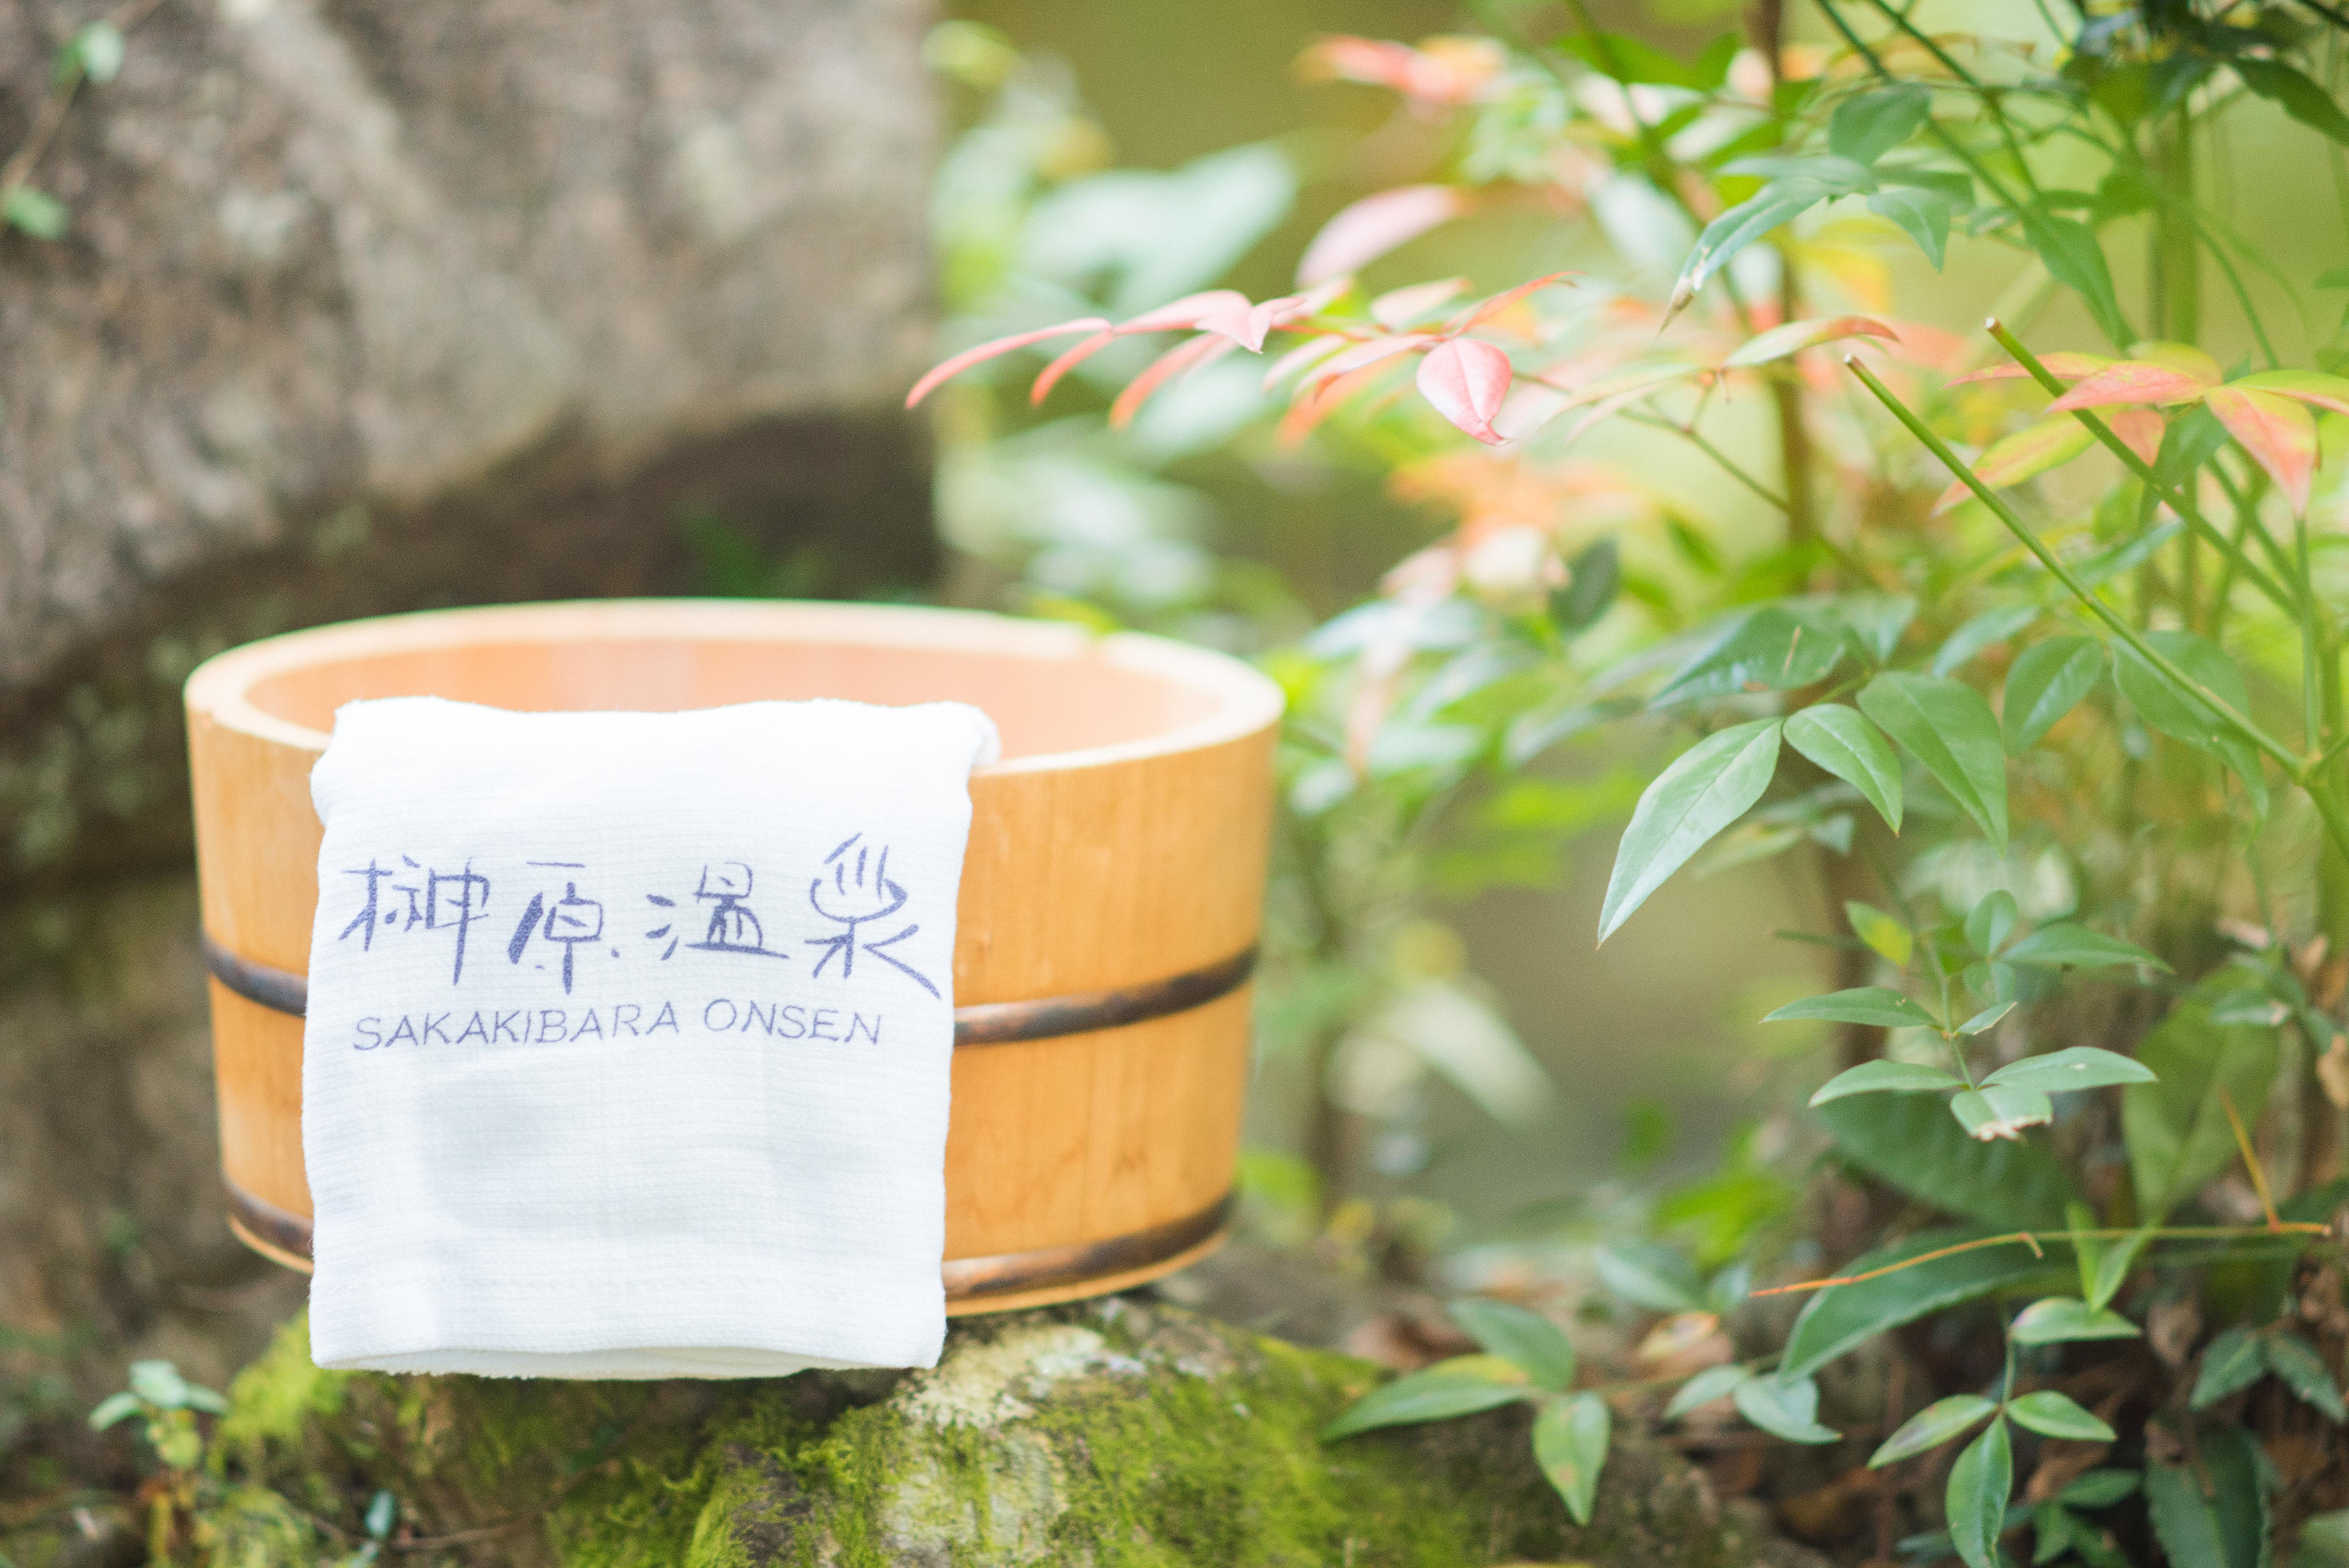 사카키하라 온천 × 노르딕 워킹! 사카키하라 특유의 건강하고 호화스러운 체험 프로그램으로 전신으로 치유를 느낄 때를!